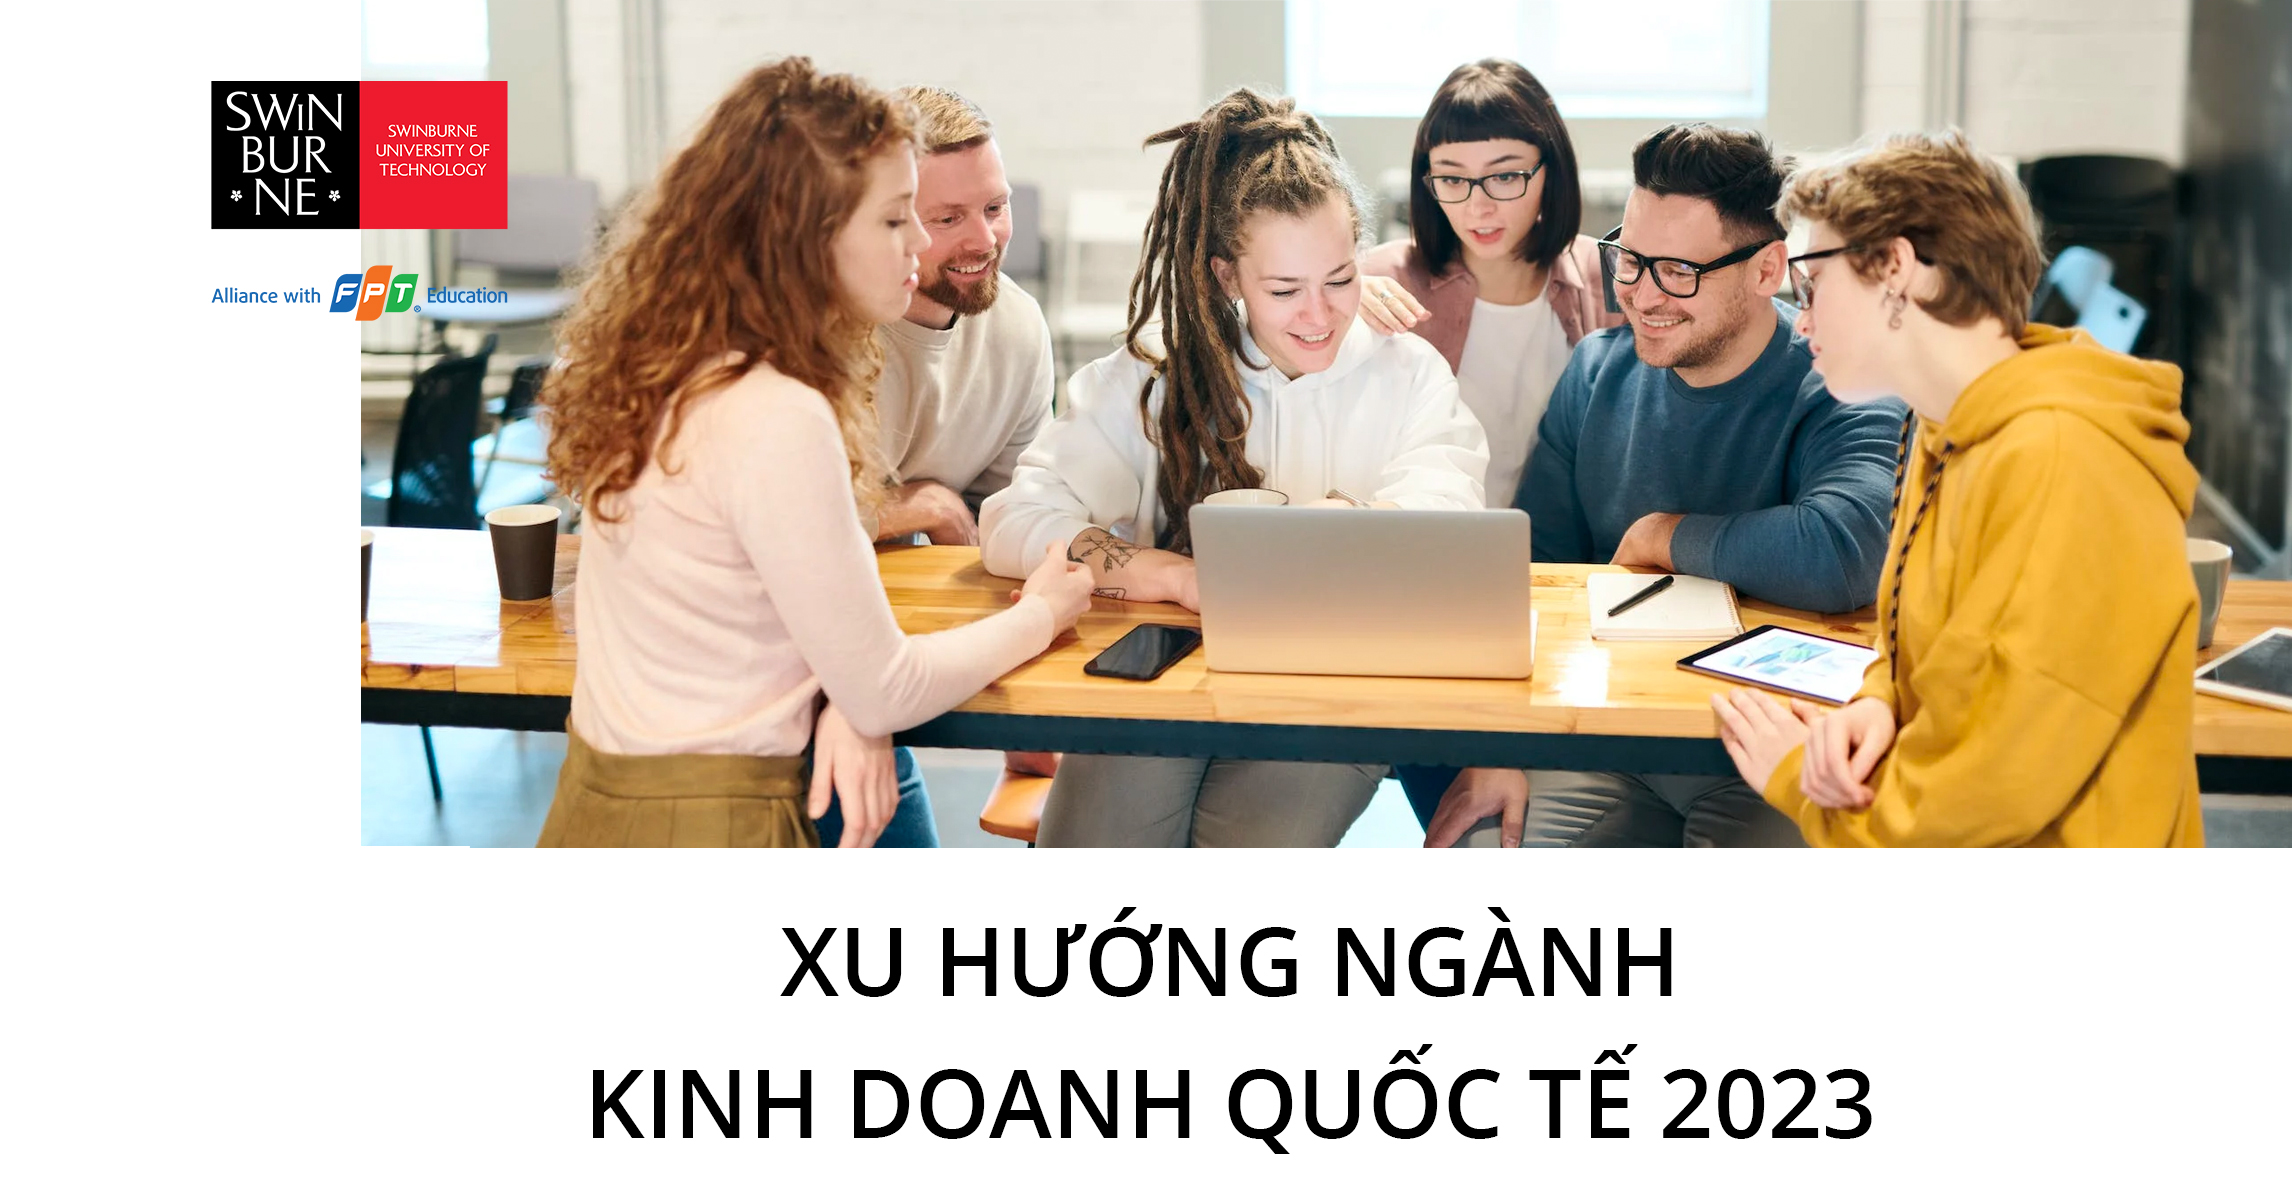 Các trường đại học tại Việt Nam có chương trình học kinh doanh quốc tế không?
